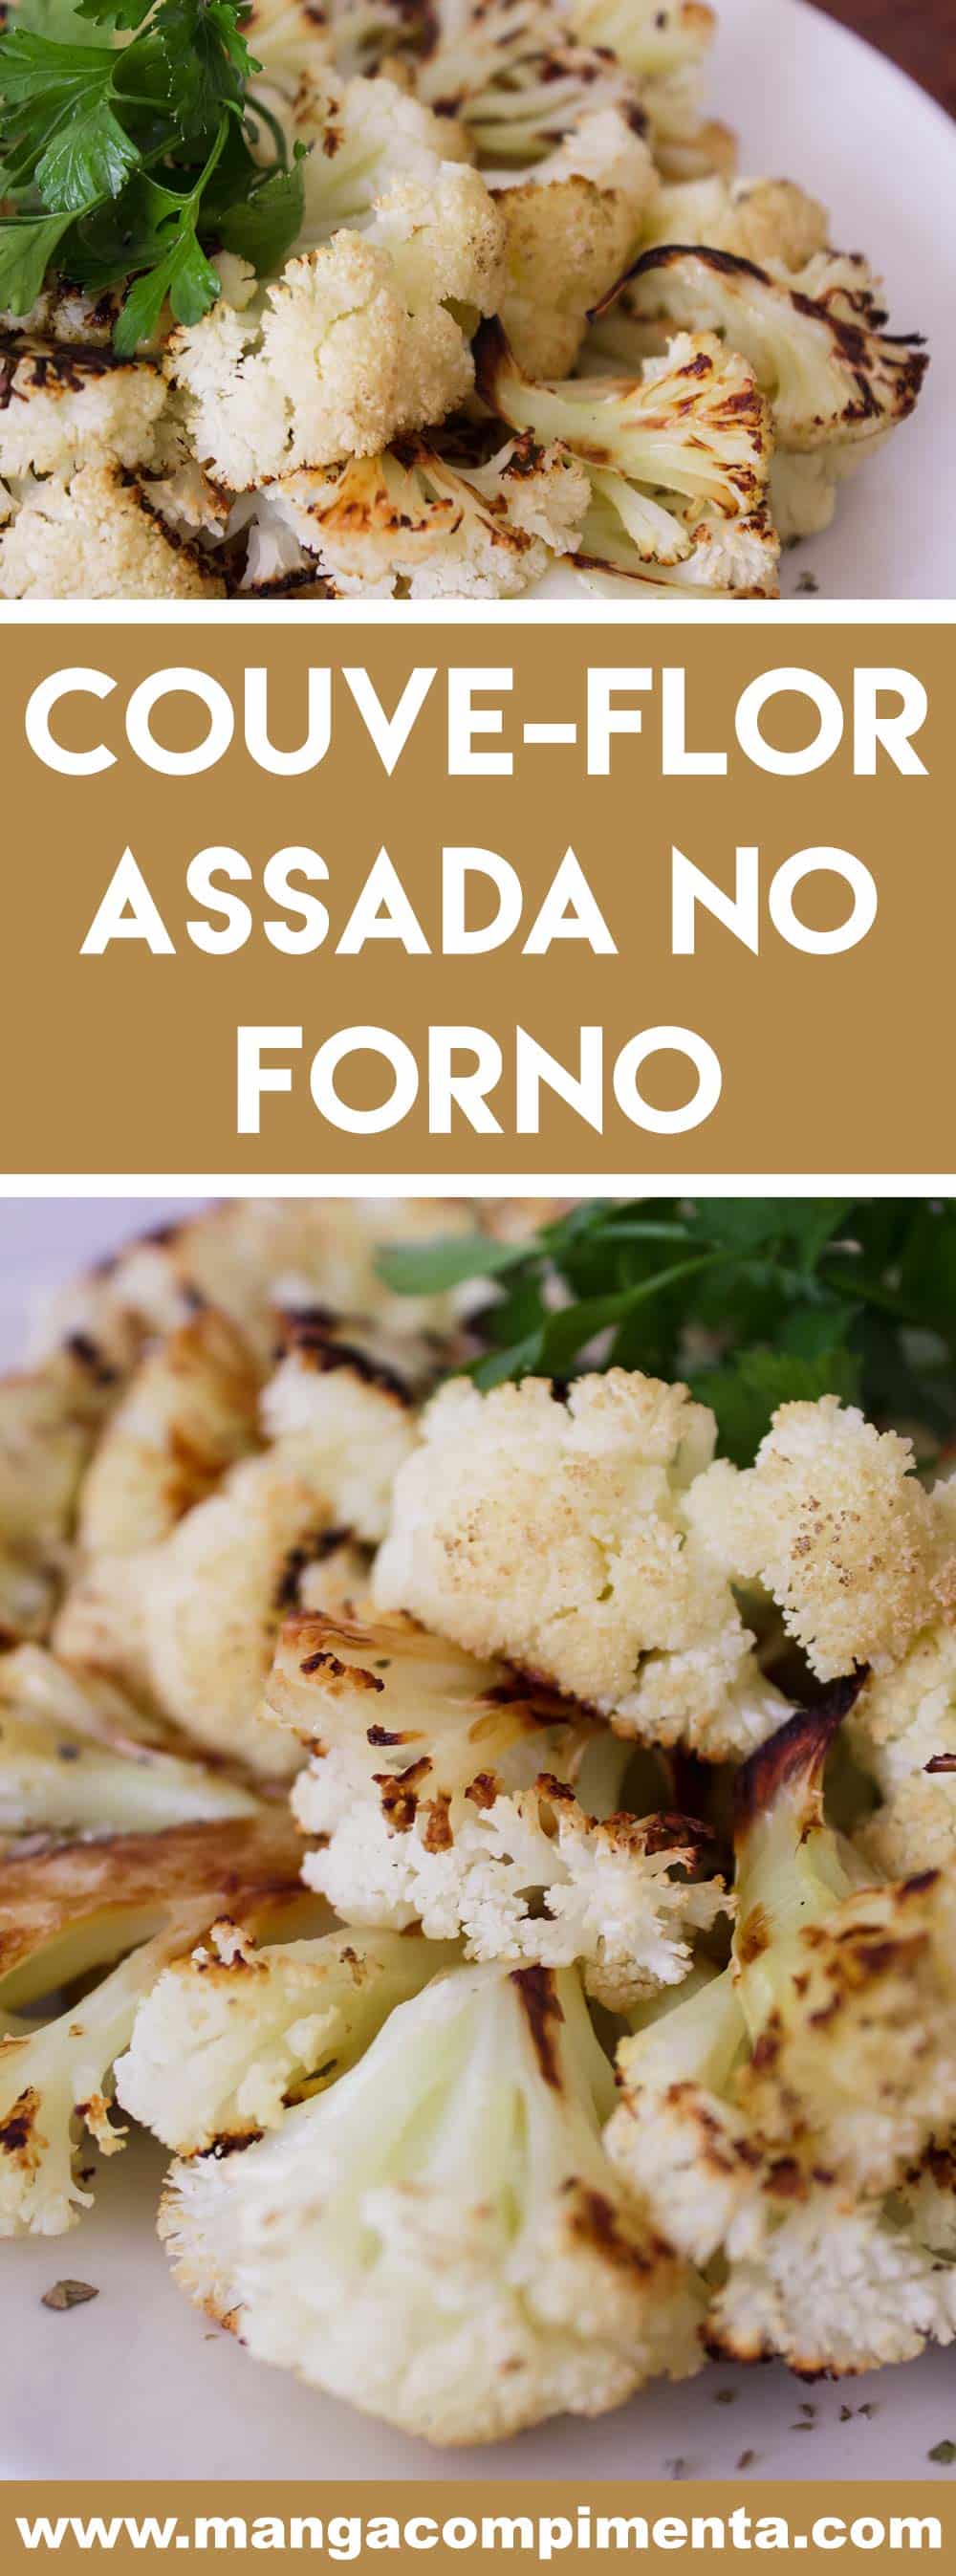 Couve-flor Assada no Forno - para quem procura praticidade e um prato delicioso para o almoço ou jantar!